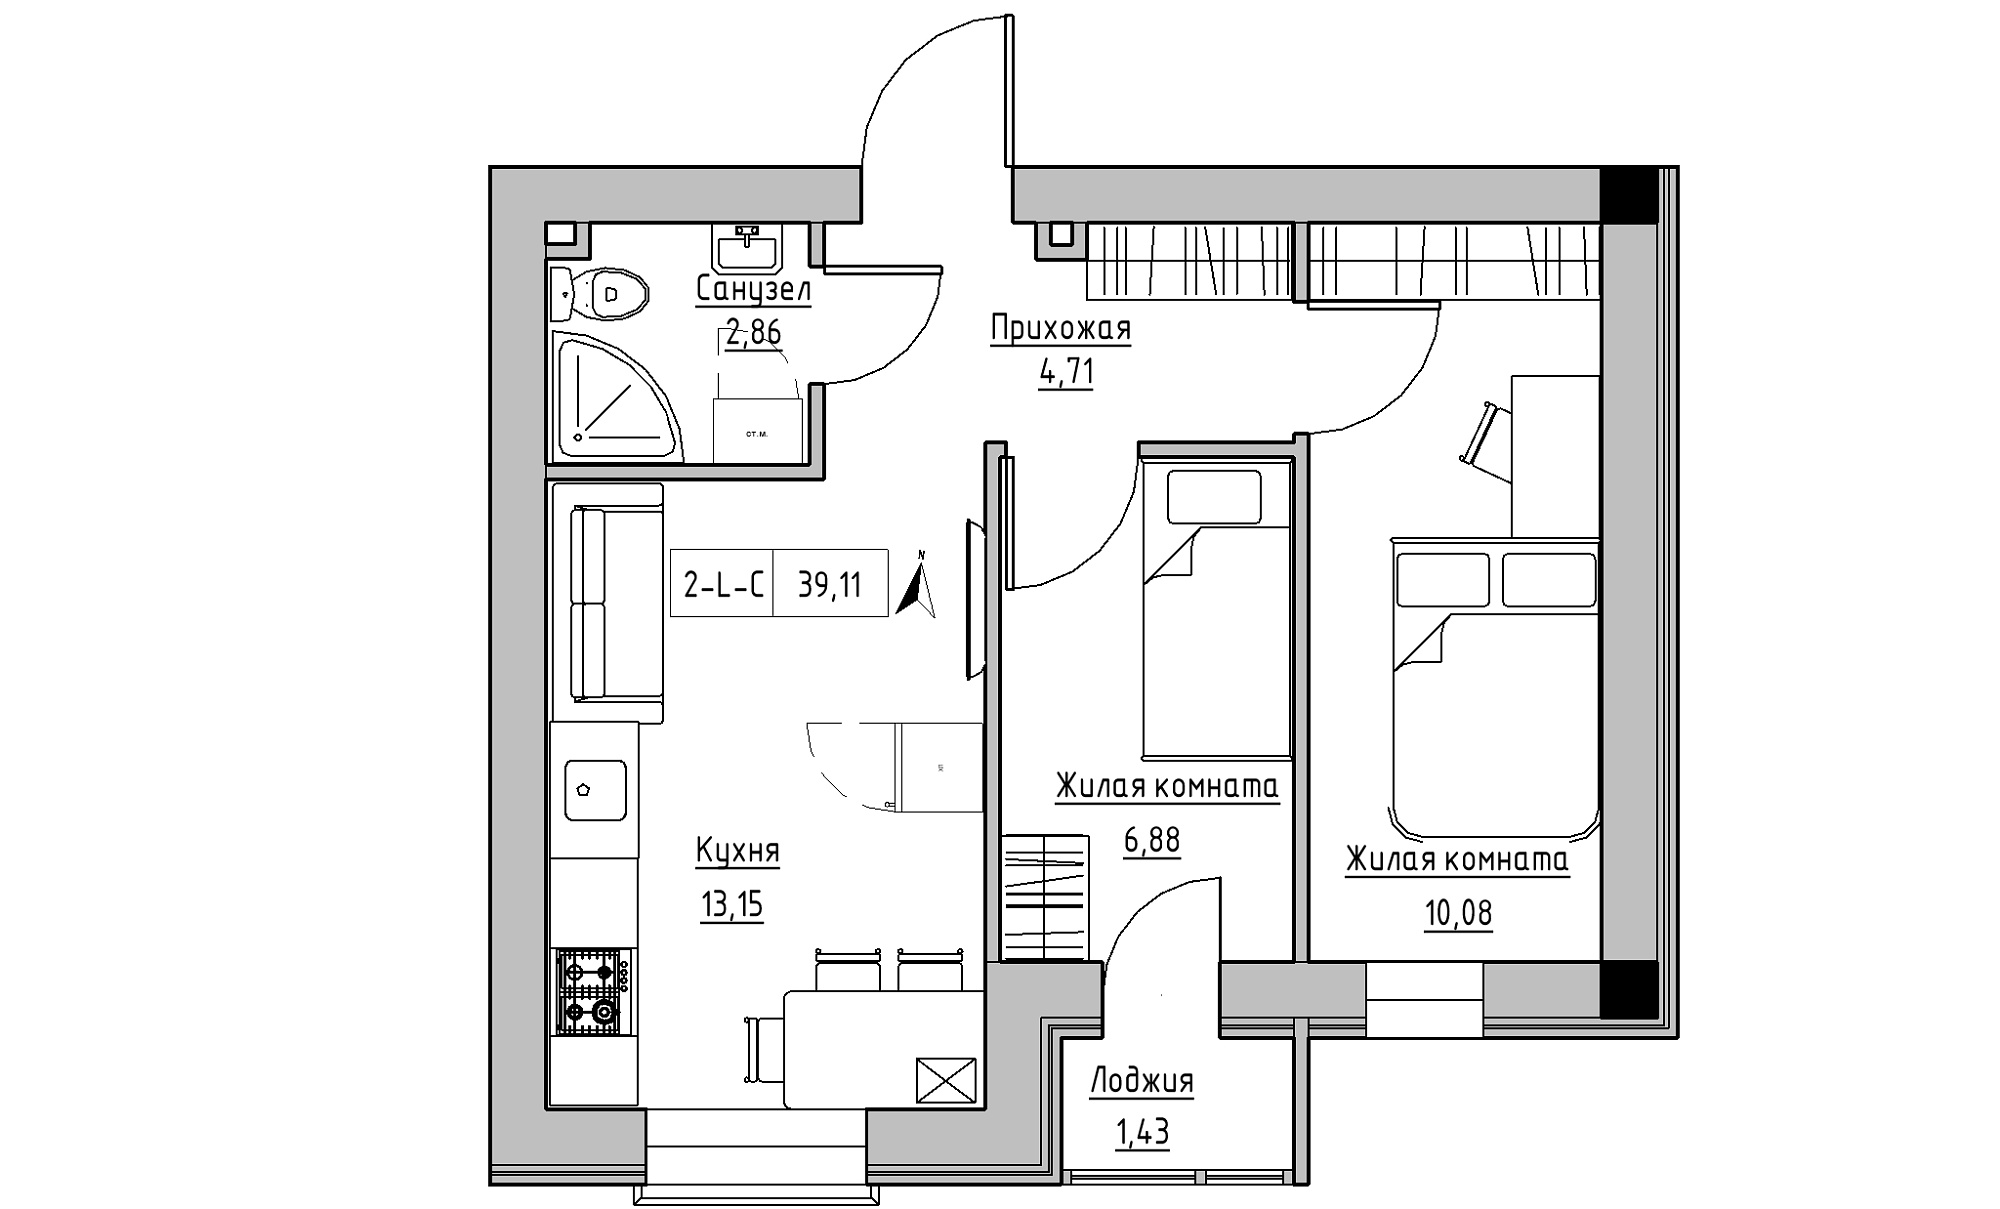 Планировка 2-к квартира площей 39.11м2, KS-016-01/0005.